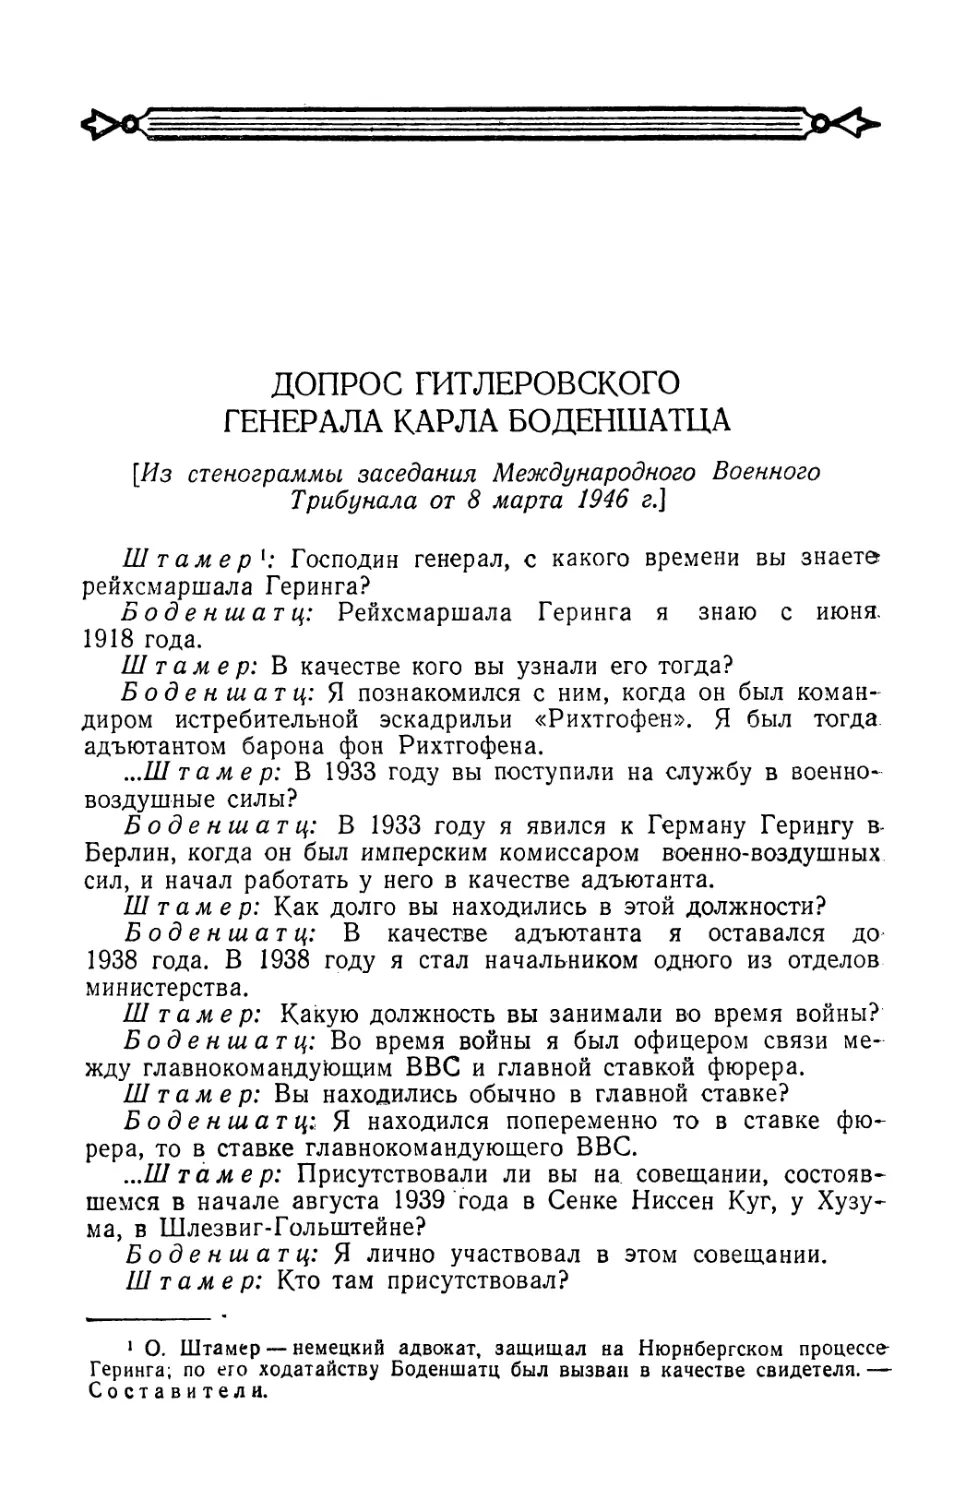 Допрос гитлеровского генерала Карла Боденшатца в заседании Трибунала от 8 марта 1946 г.